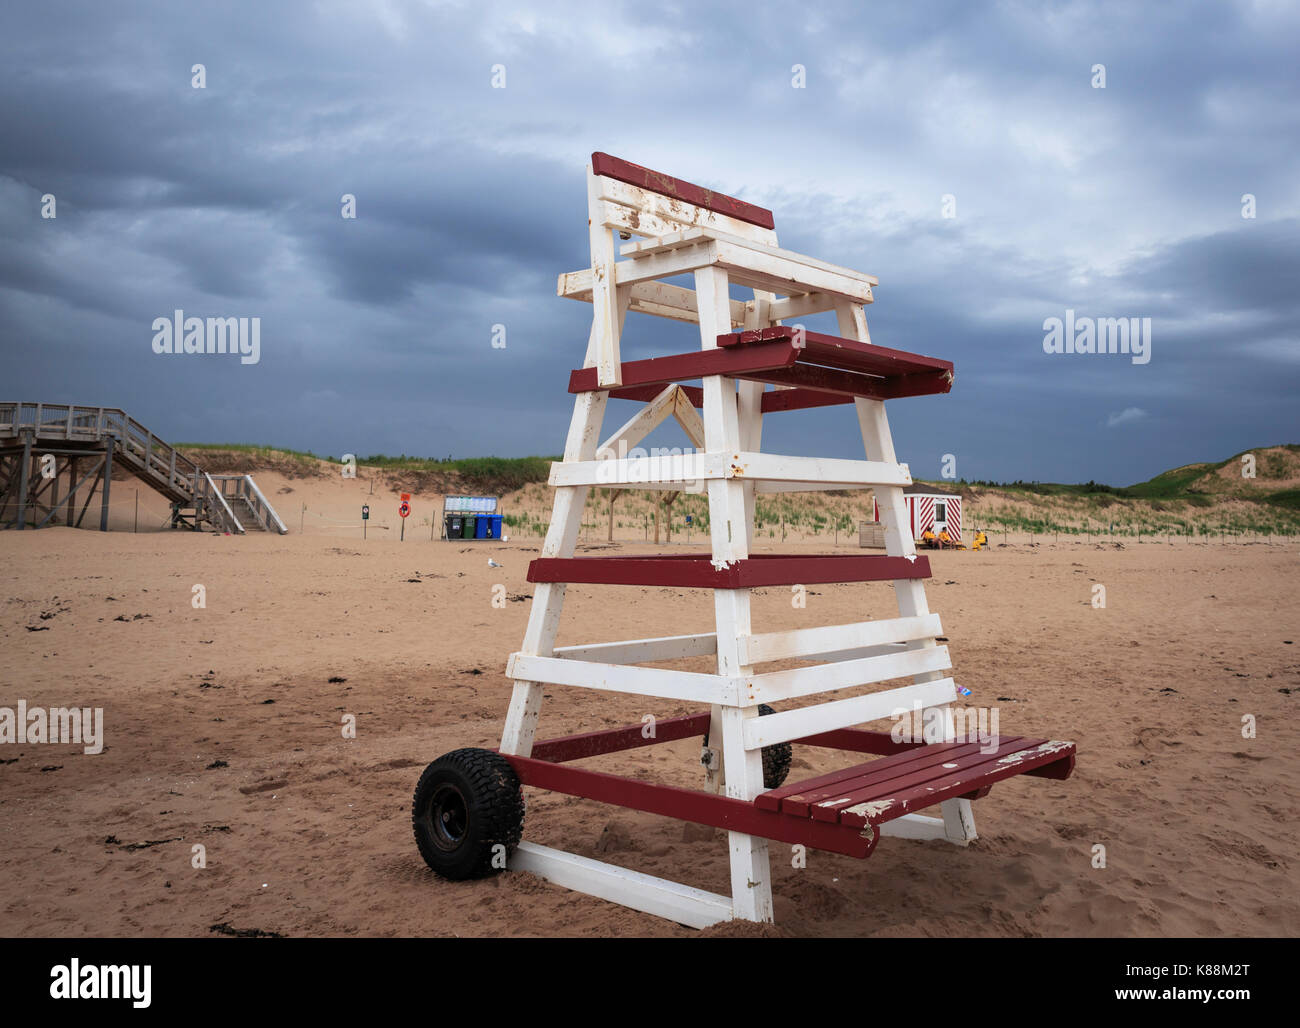 Tall lifeguard présidence à une plage lors d'une fraîche journée d'été nuageux Banque D'Images